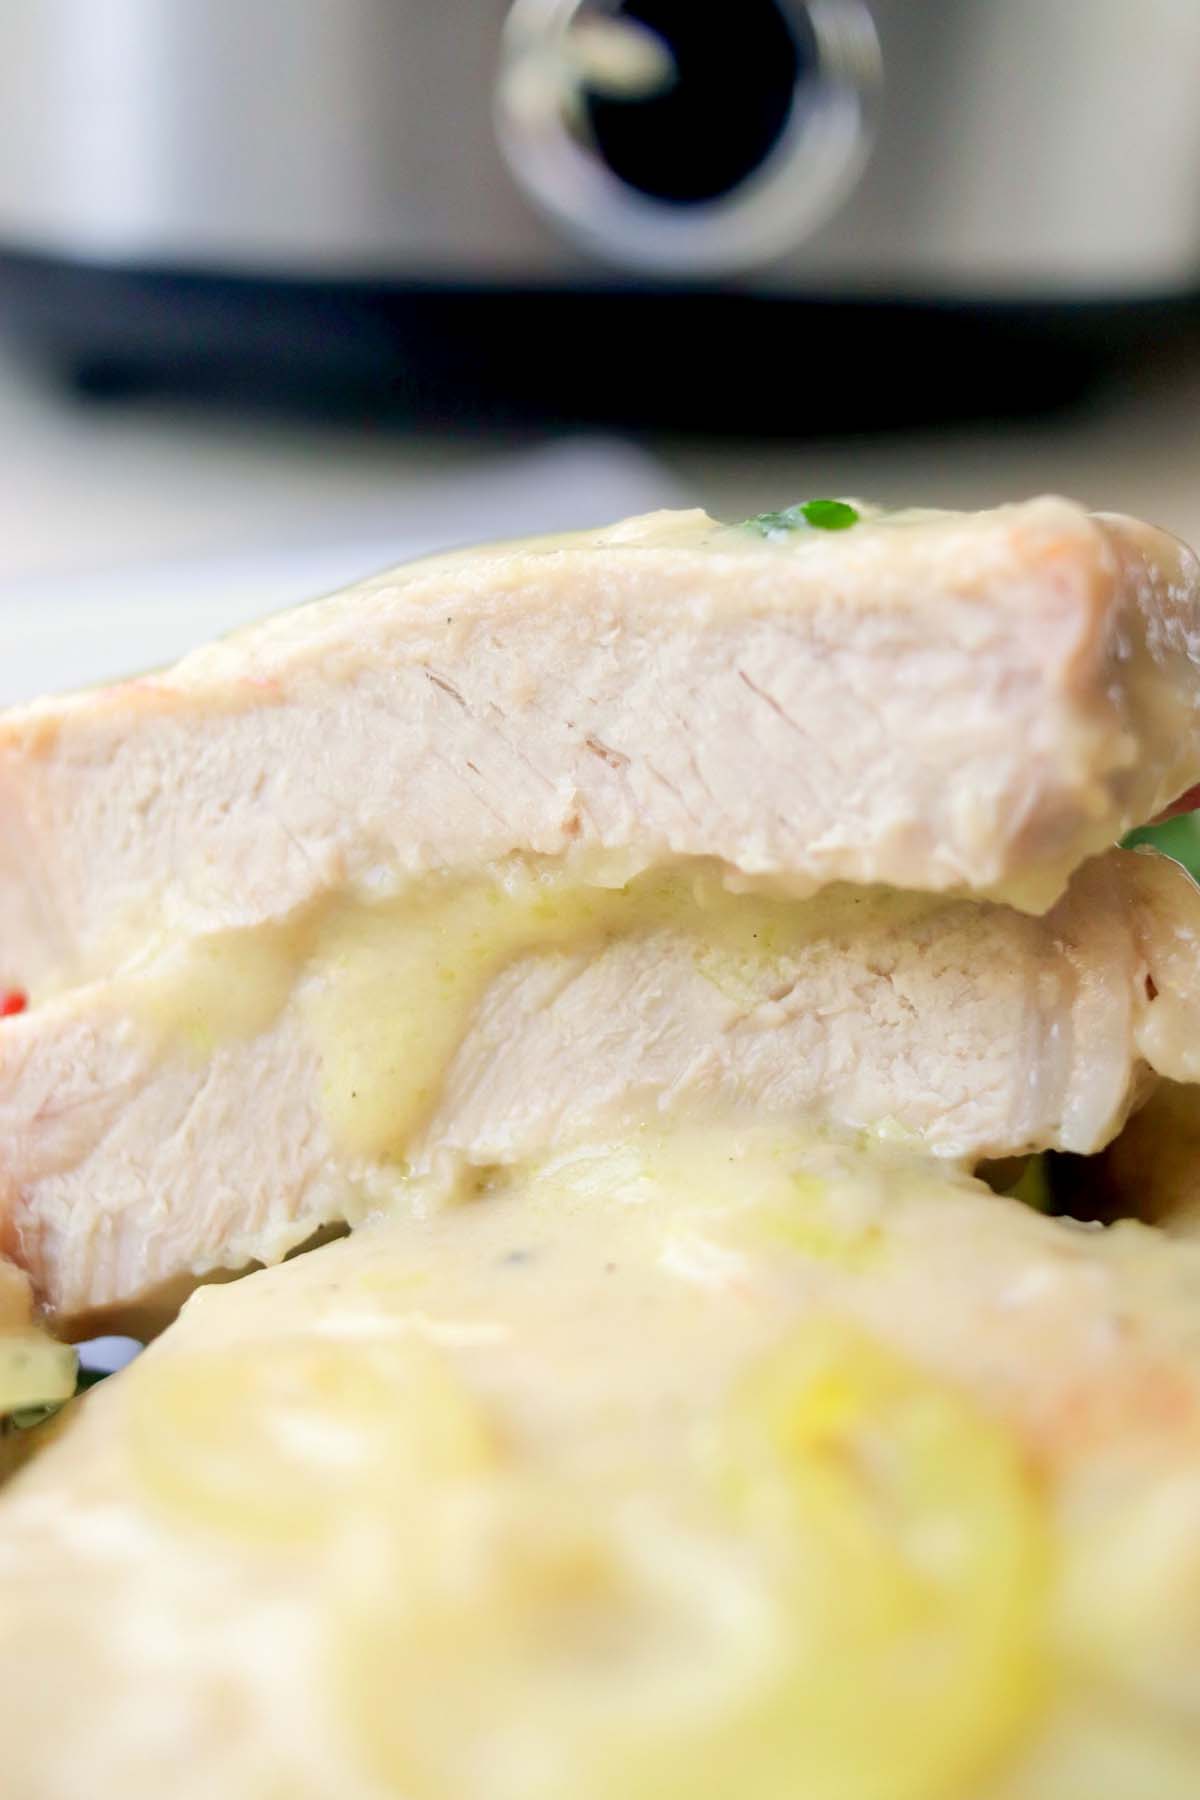 close up view of a pork chop cut in half.